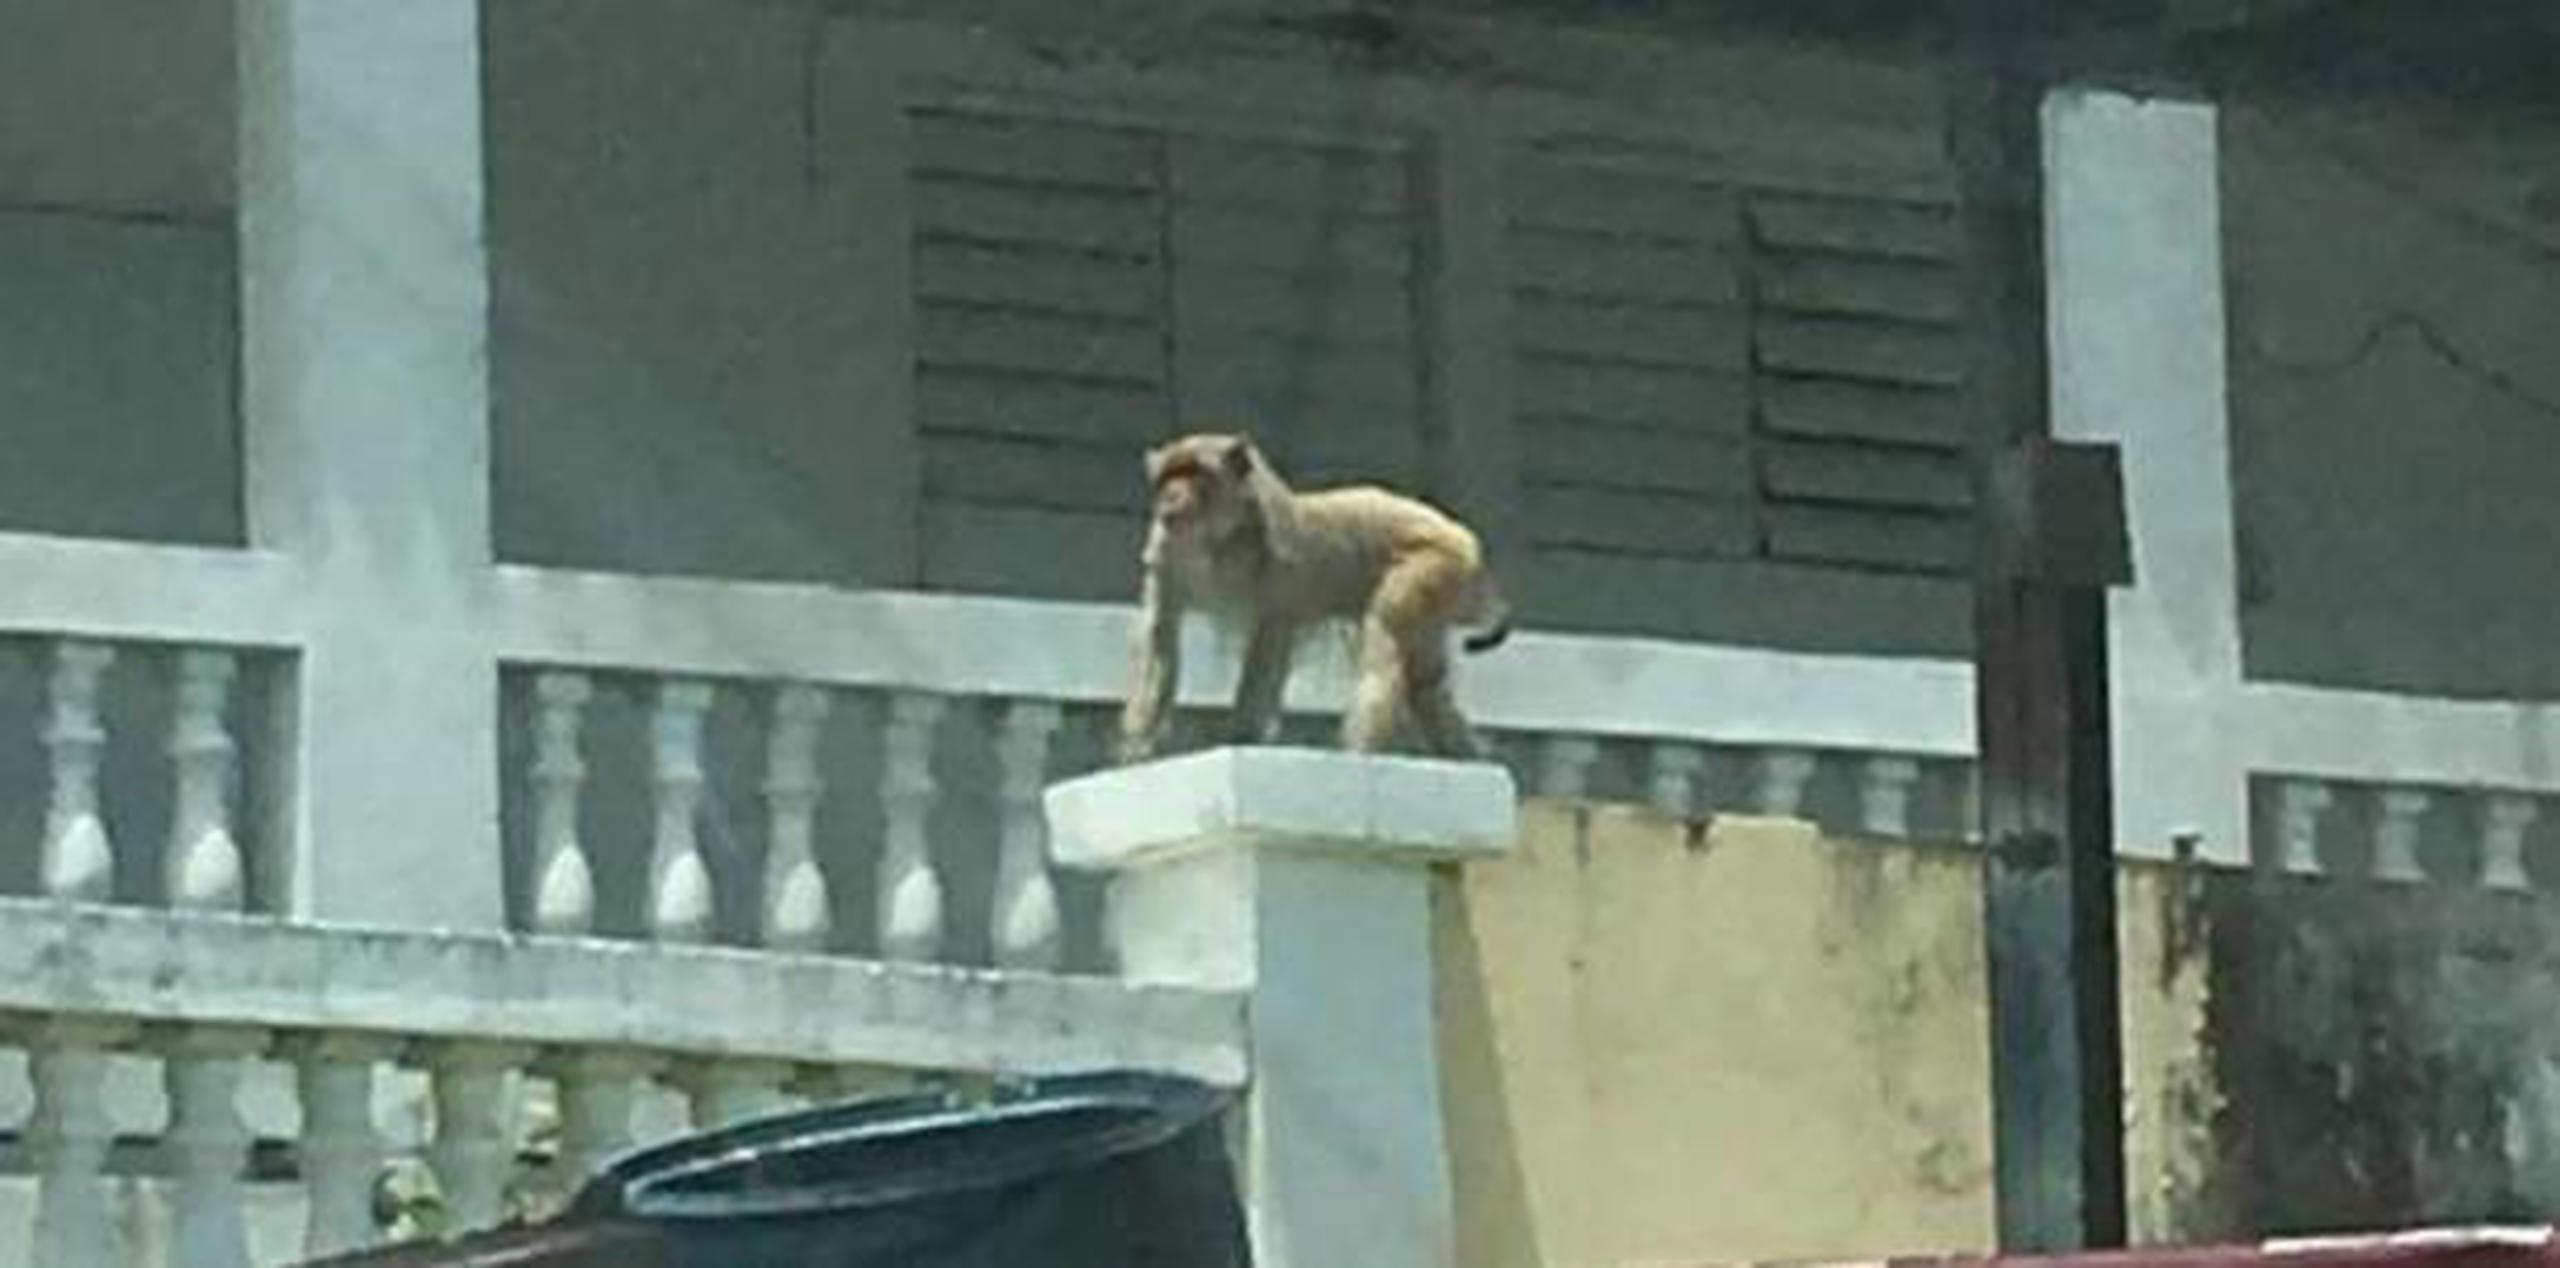 El más reciente avistamiento del primate se dio esta semana cuando se publicó en las redes sociales una imagen del susodicho trepado en la columna de una residencia.  (Captura)